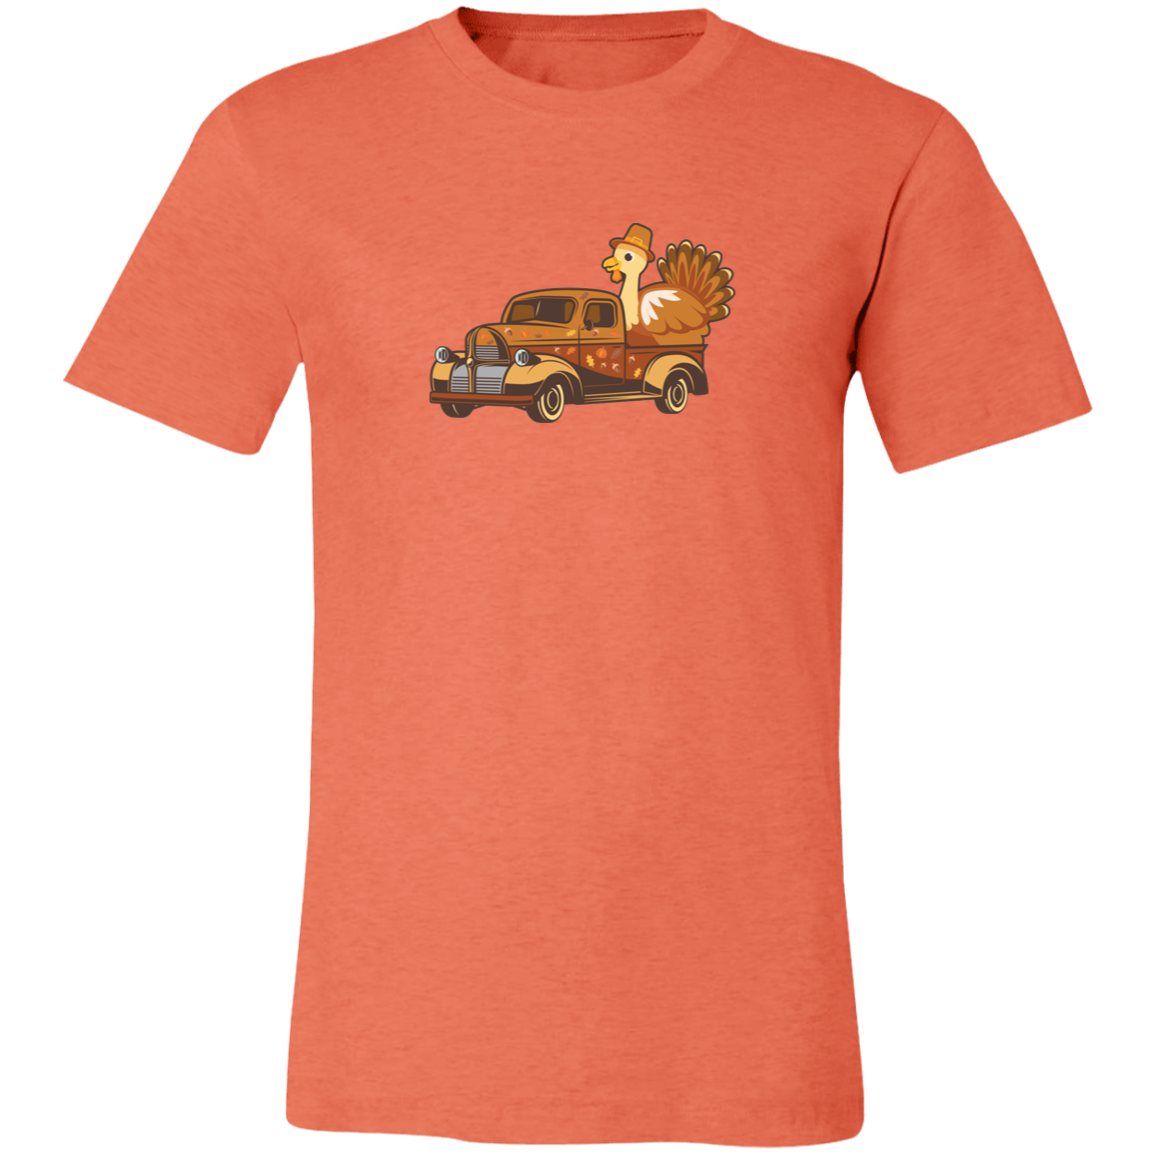 Turkey Farm Truck Shirt